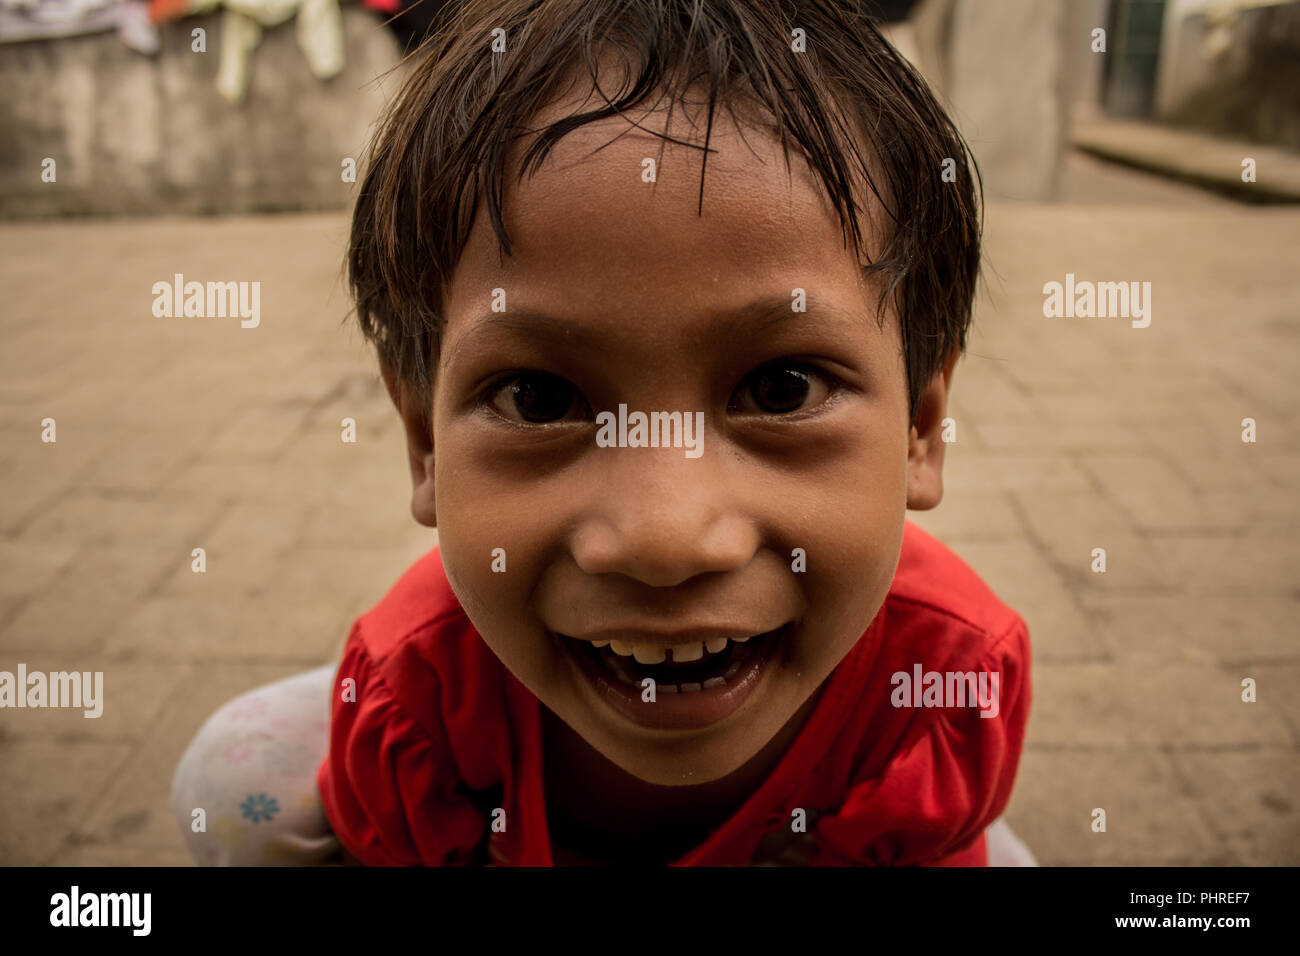 Bajo's Native Kid Smile Stock Photo